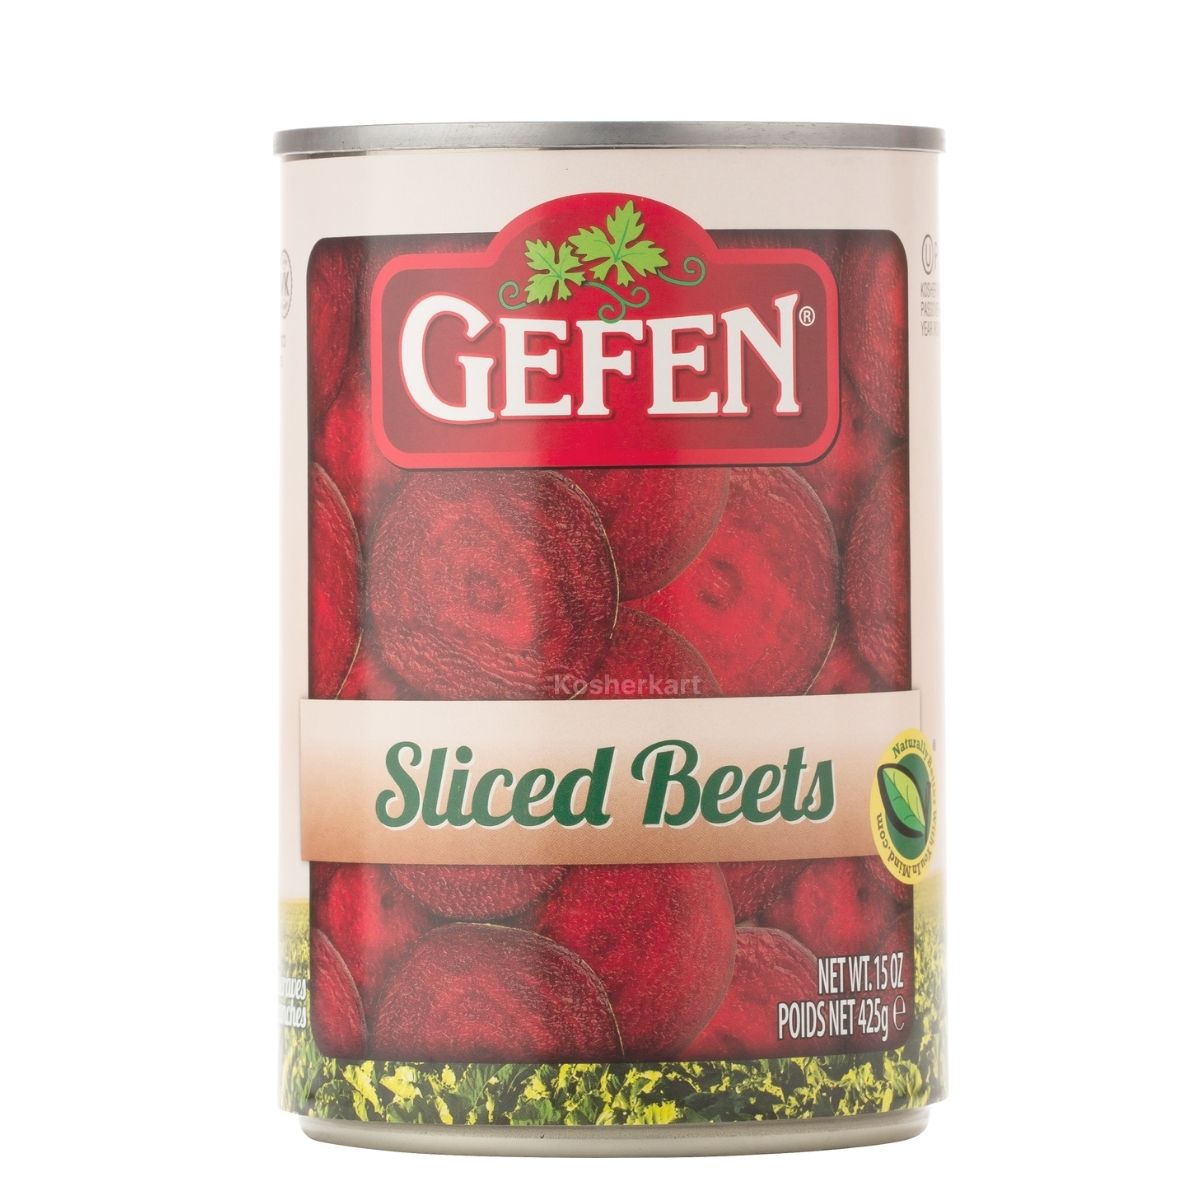 Gefen Canned Sliced Beets 15 oz